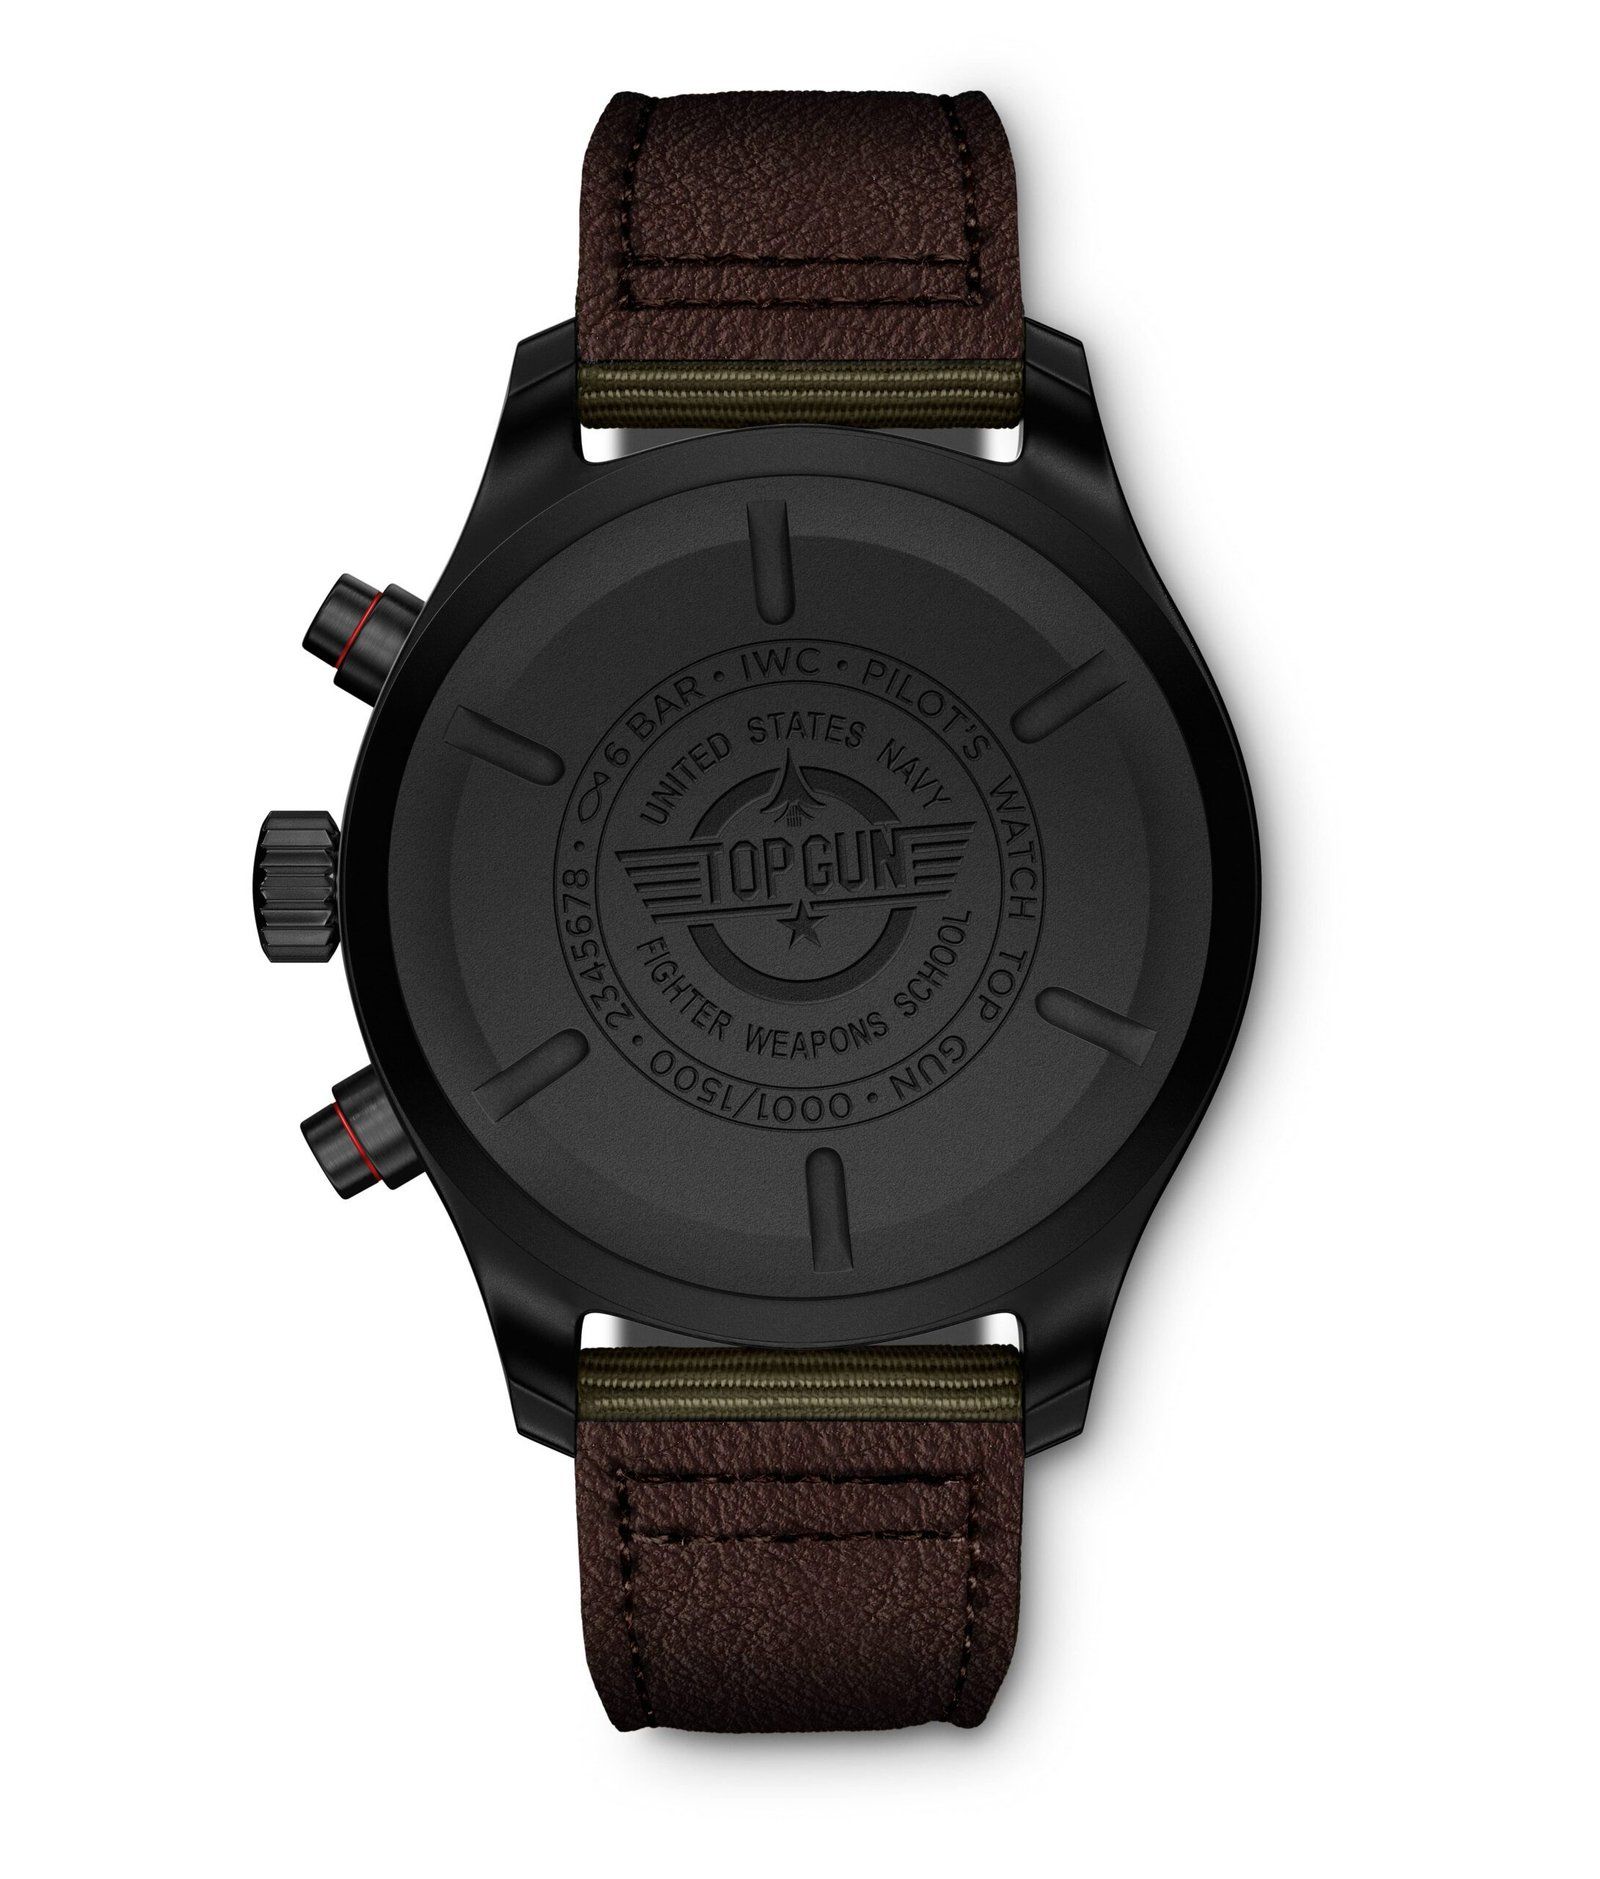 FEATURING: IWC - Pilot’s Watch Chronograph TOP GUN Edition “SFTI” In Black Ceramic And Ceratanium